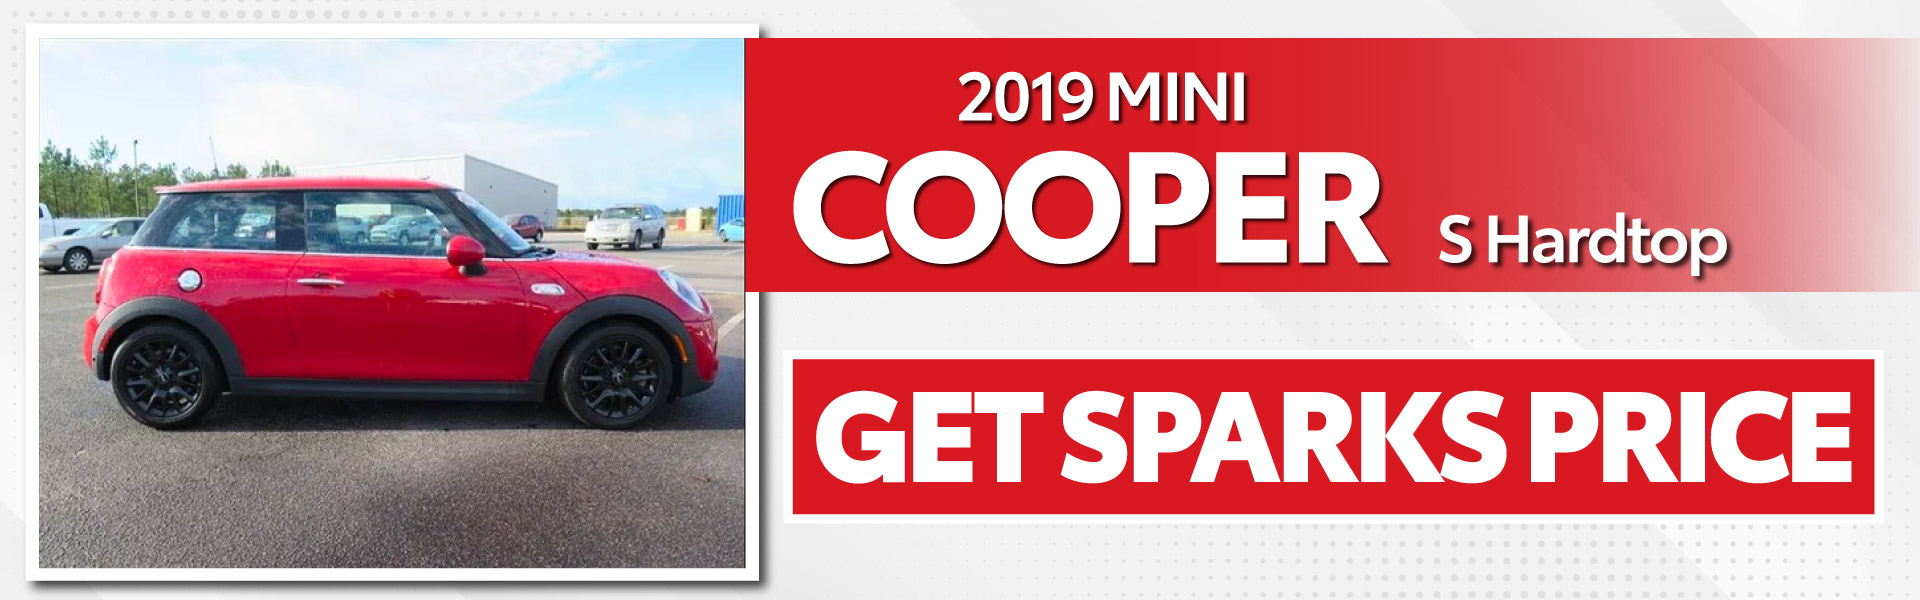 2019 Mini Cooper S Hardtop - Get Sparks Price